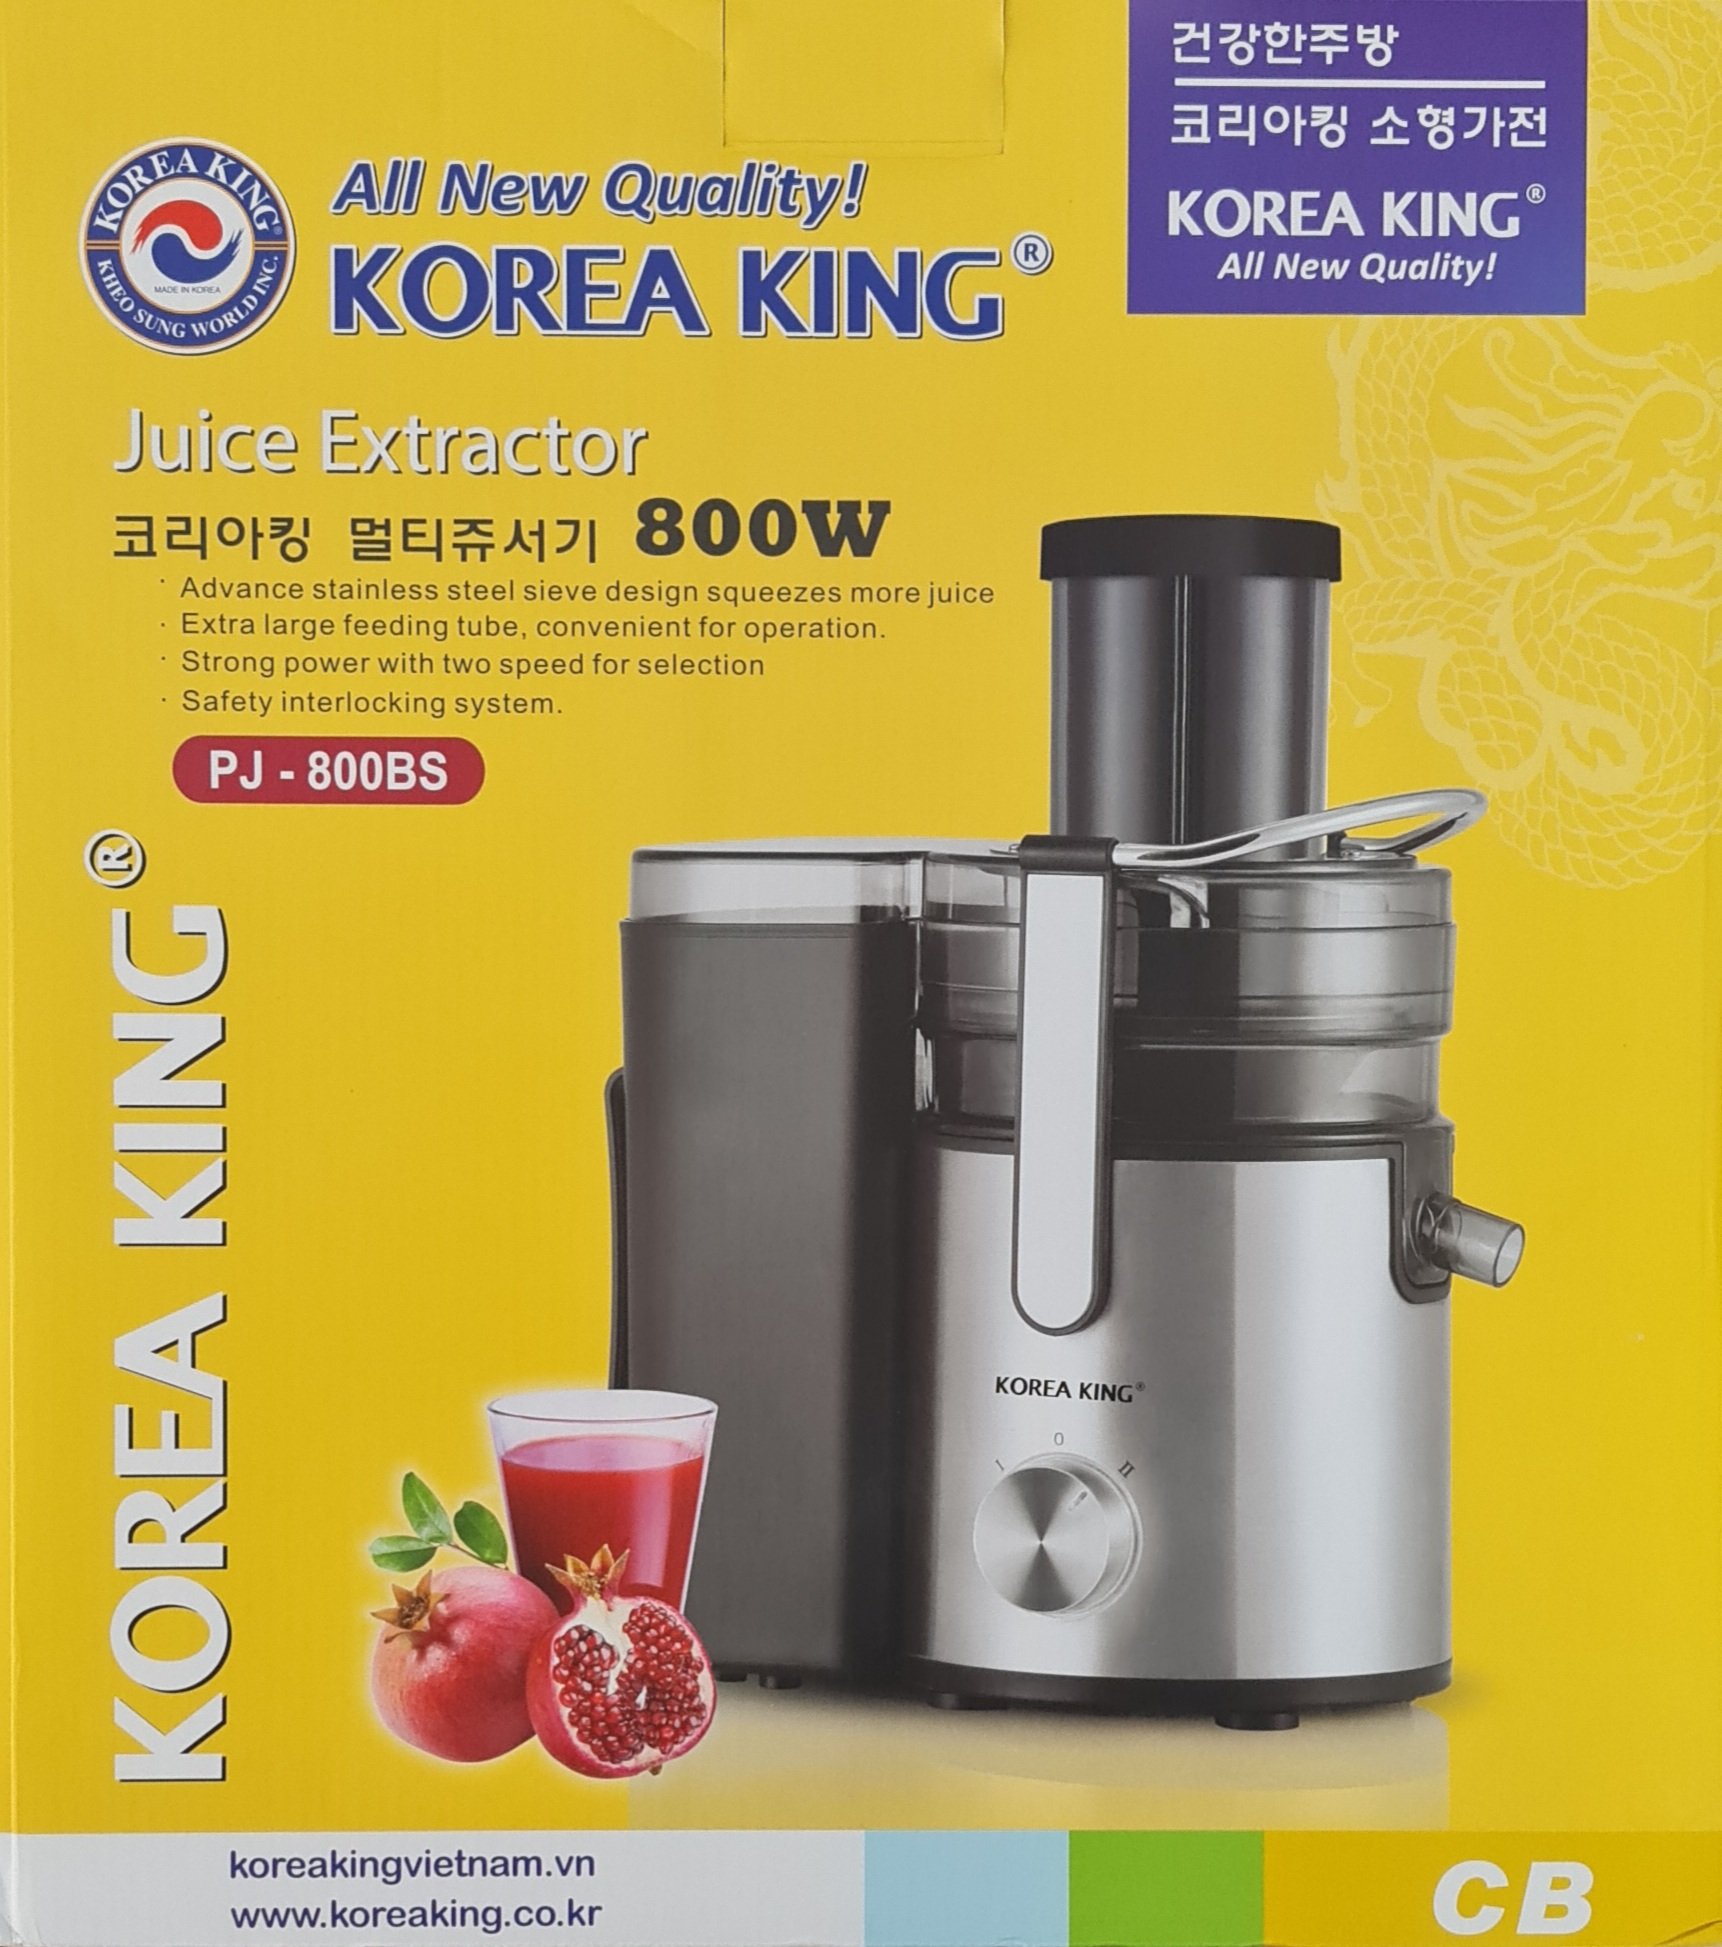 Máy ép trái cây Korea King PJ-800BS ( Hàng chính hãng )